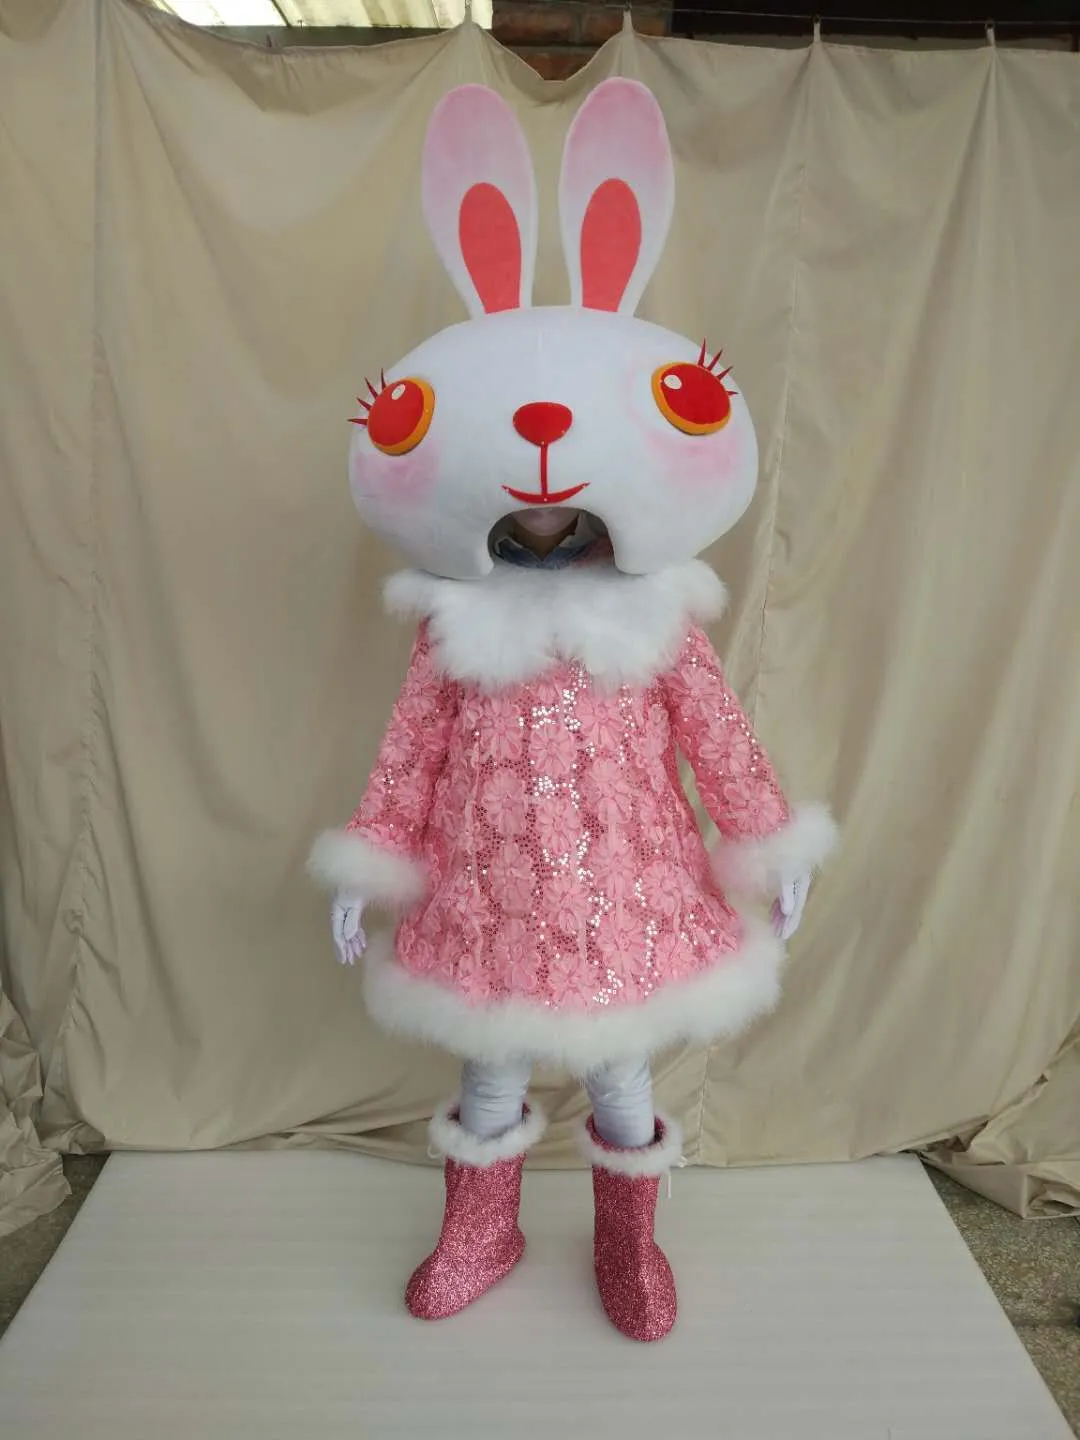 جودة عالية ريال صور ديلوكس عيون حمراء الأرنب التميمة حلي الكبار الحجم شحن مجاني